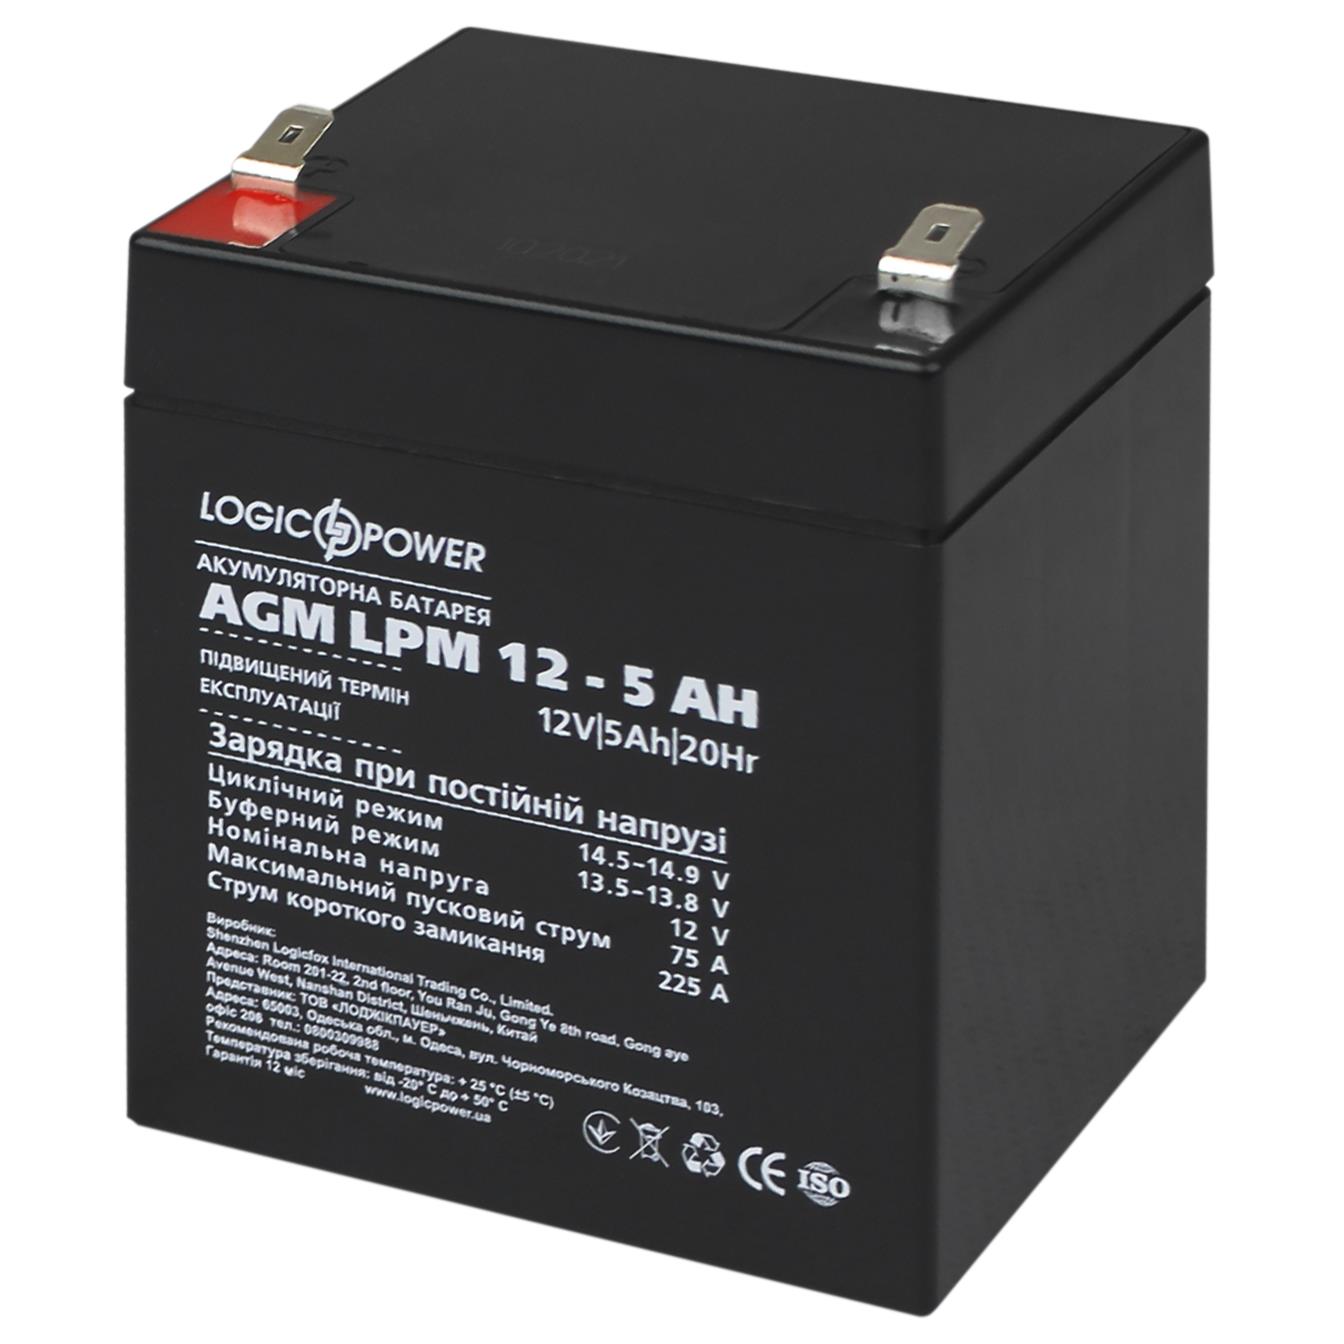 Акумулятор свинцево-кислотний LogicPower AGM LPM 12V - 5 Ah (3861)